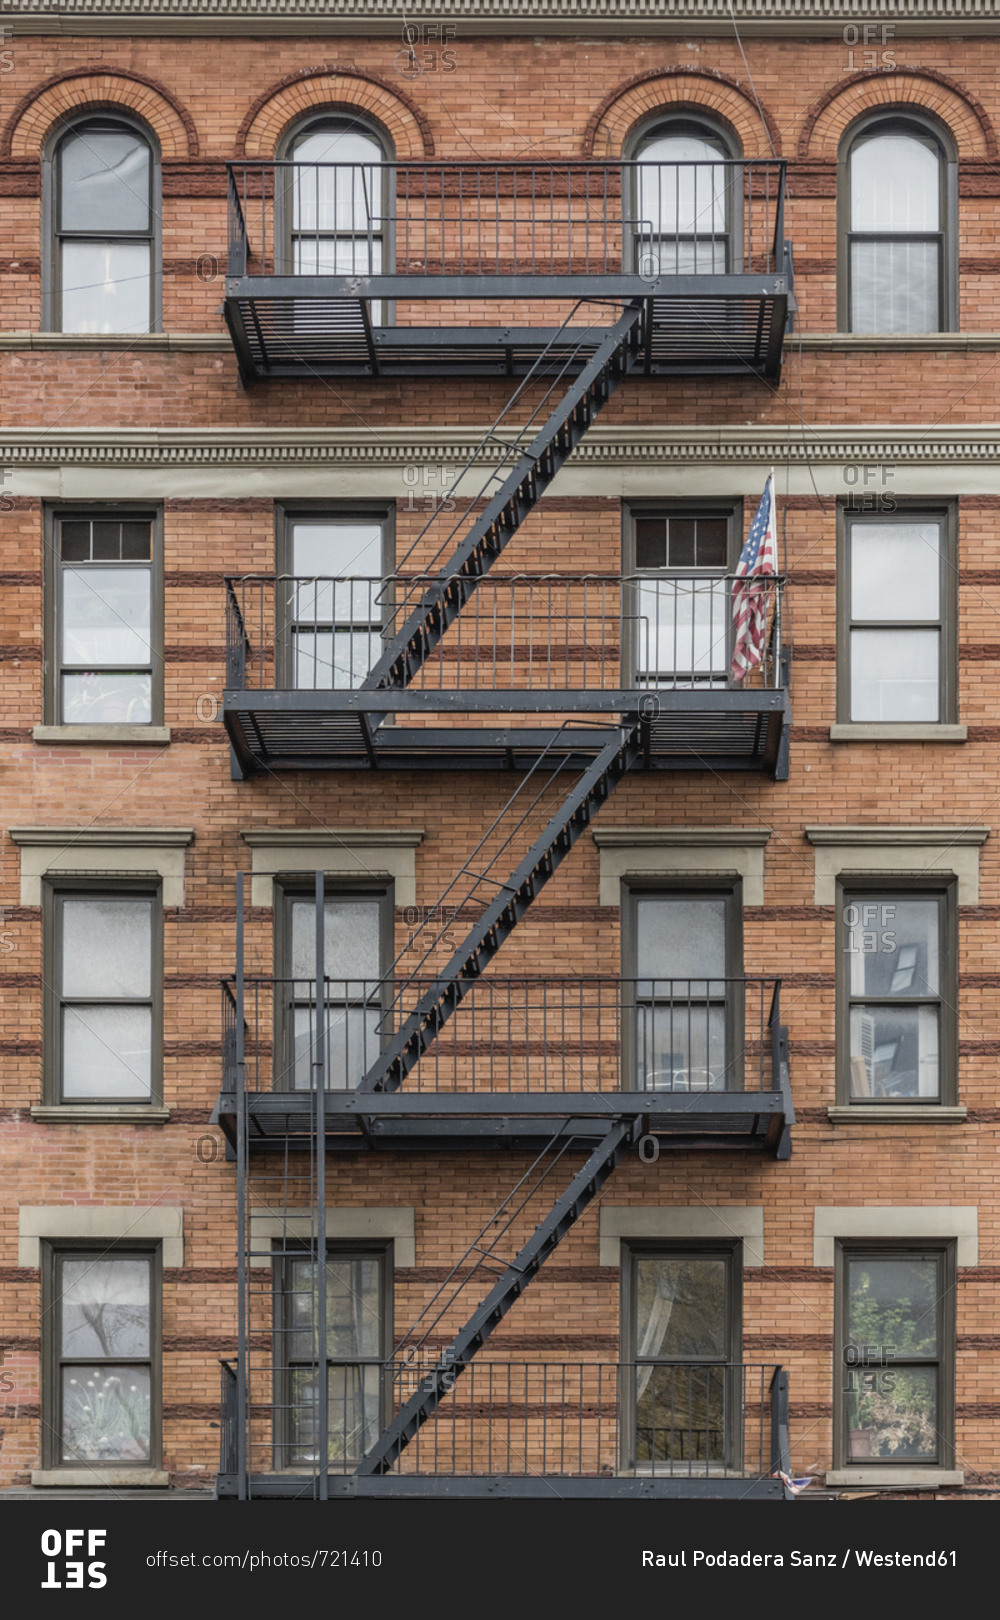 USA- New York City- Manhattan- building with fire escape